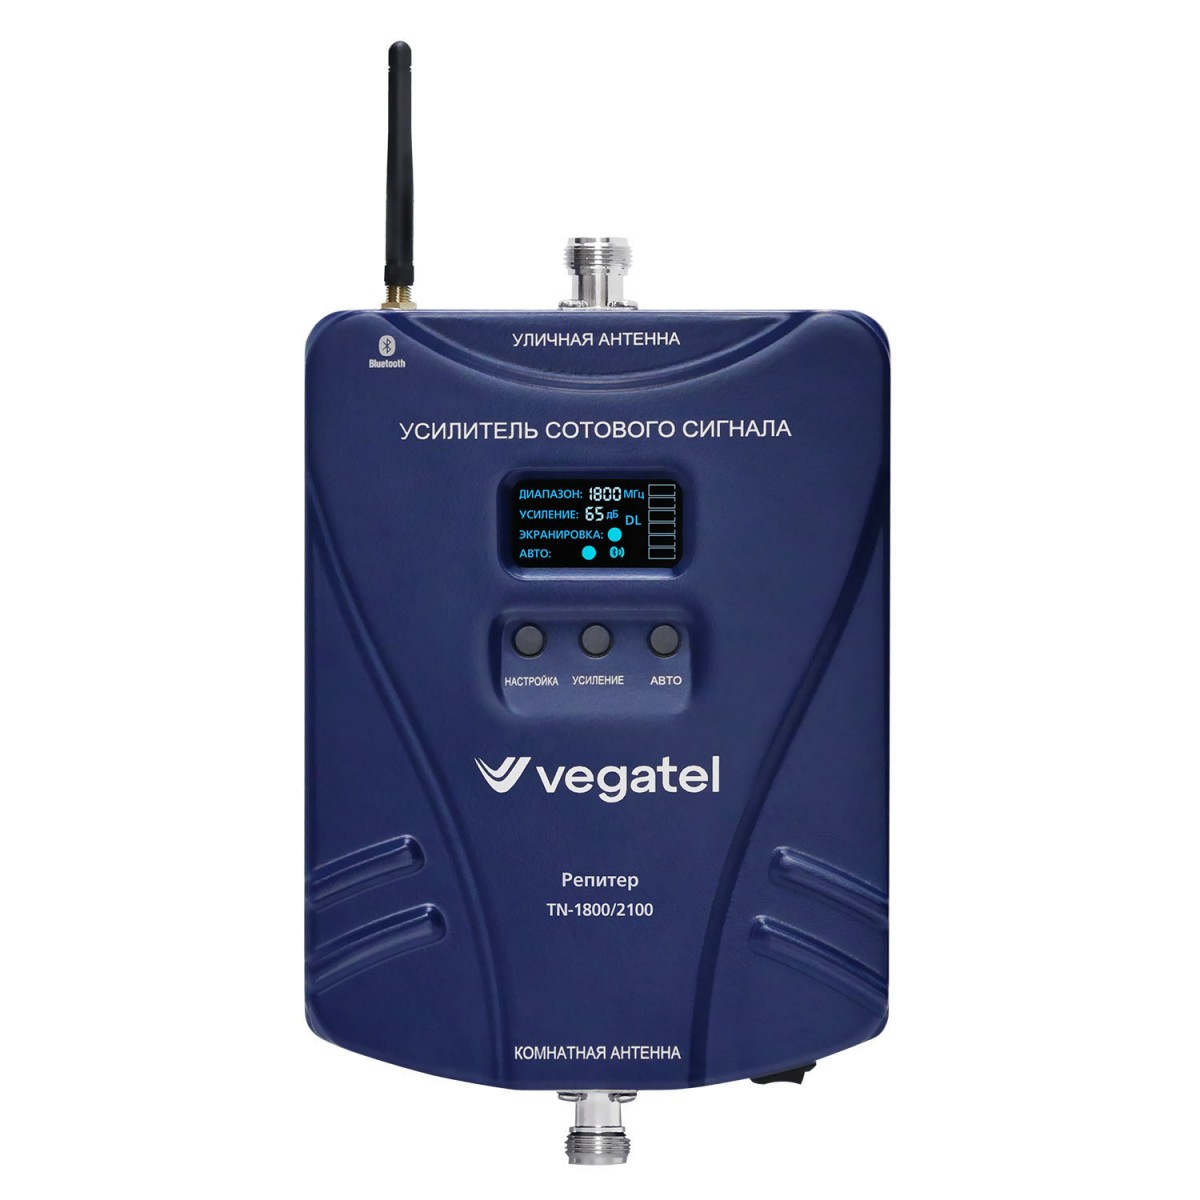 Детальное изображение товара "Комплект усиления сотовой связи Vegatel TN-1800/2100 (14Y)" из каталога оборудования Антенна76